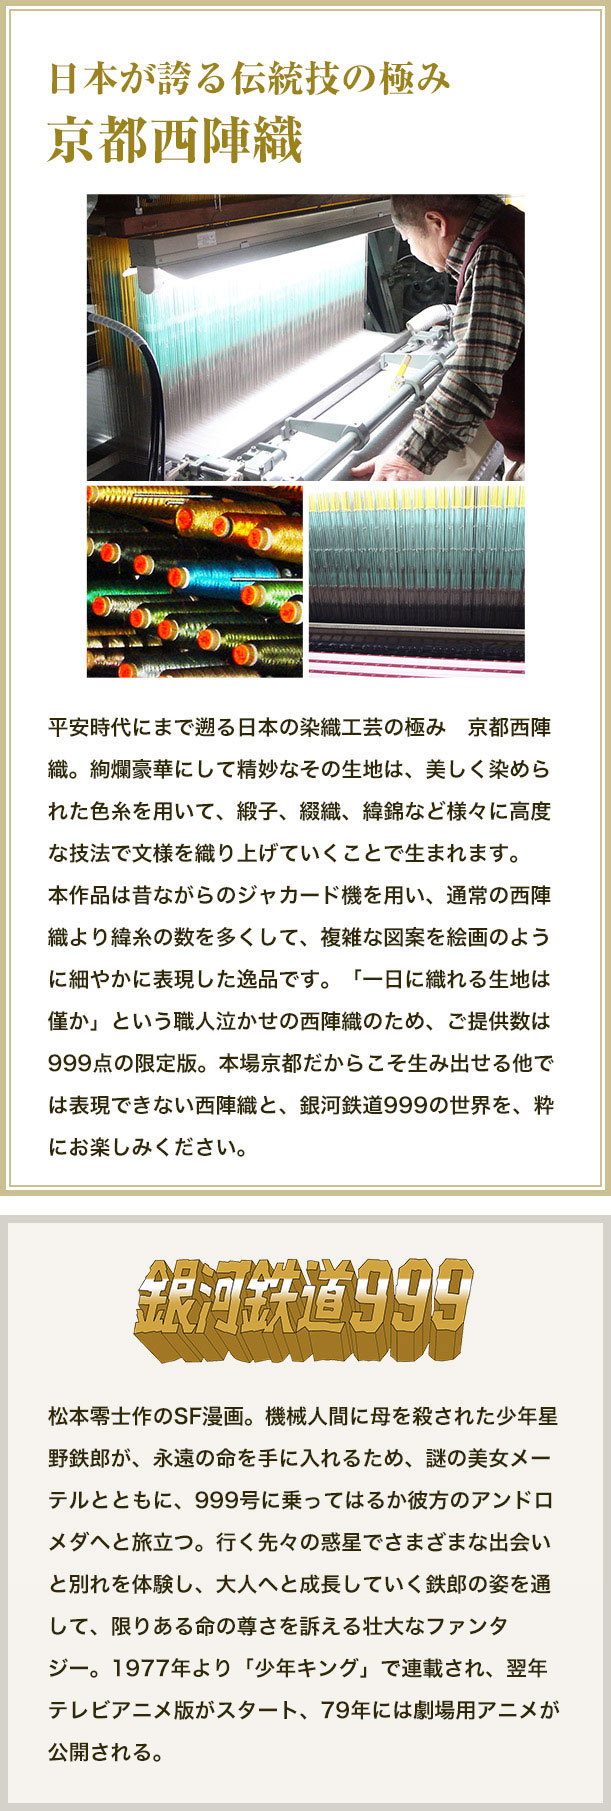 日本が誇る伝統技の極み京都西陣織。平安時代にまで遡る日本の染織工芸の極み　京都西陣織。絢爛豪華にして精妙なその生地は、美しく染められた色糸を用いて、緞子、綴織、緯錦など様々に高度な技法で文様を織り上げていくことで生まれます。本作品は昔ながらのジャカード機を用い、通常の西陣織より緯糸の数を多くして、複雑な図案を絵画のように細やかに表現した逸品です。「一日に織れる生地は僅か」という職人泣かせの西陣織のため、ご提供数は999点の限定版。本場京都だからこそ生み出せる他では表現できない西陣織と、銀河鉄道999の世界を、粋にお楽しみください。